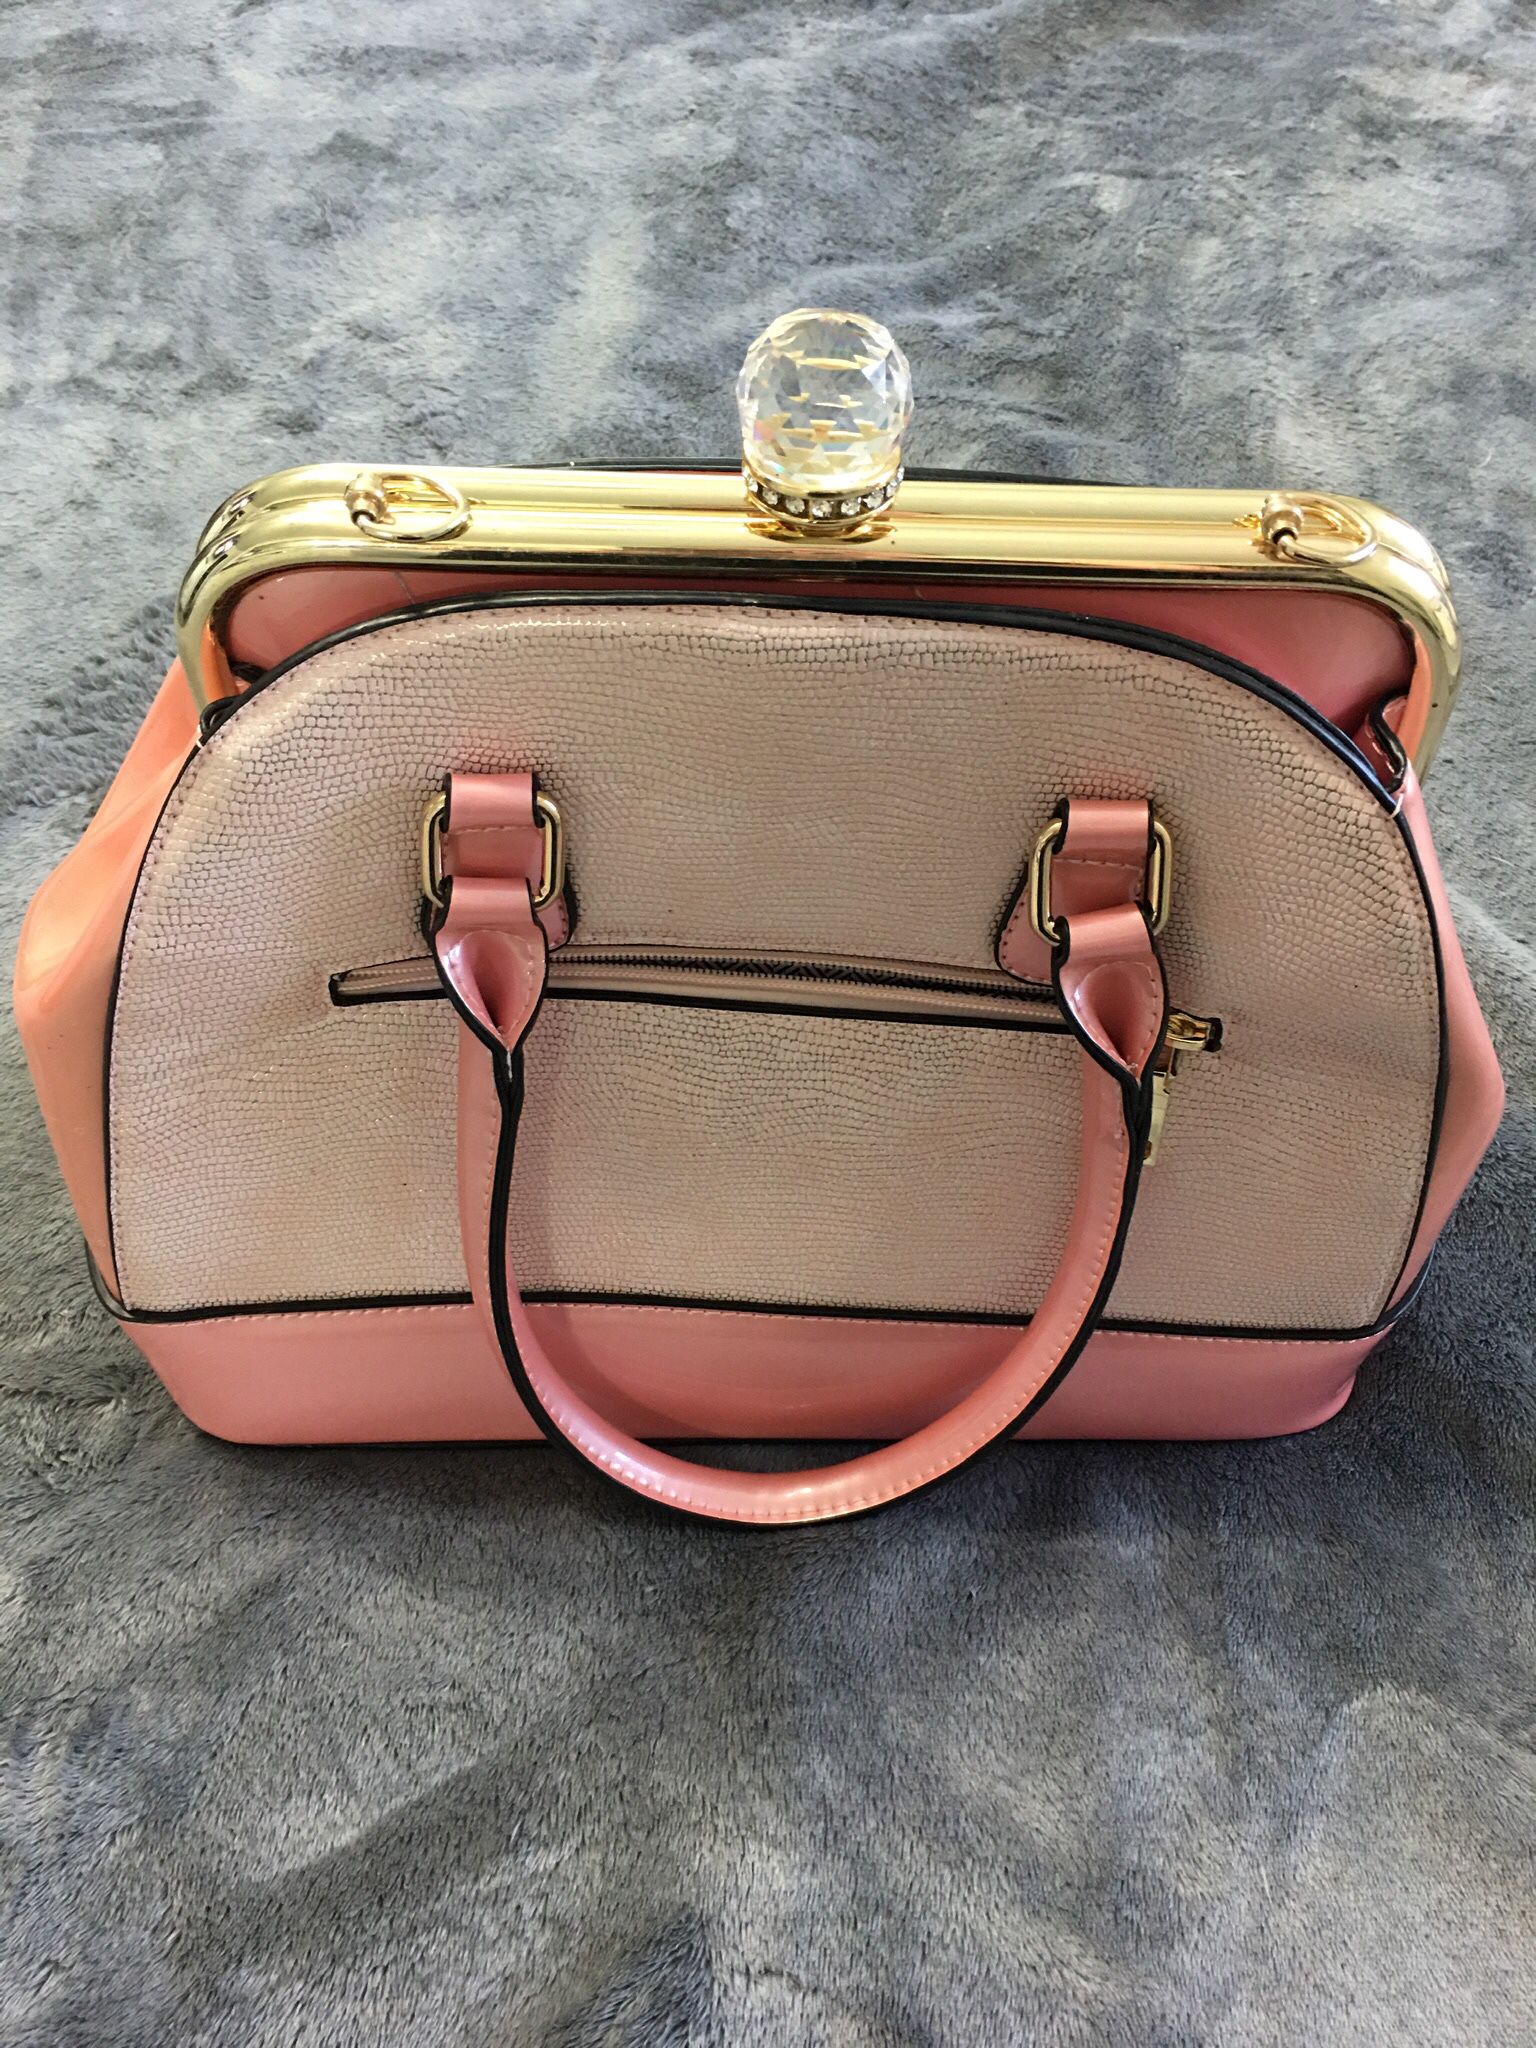 Vintage Pink Snakeskin Handbag